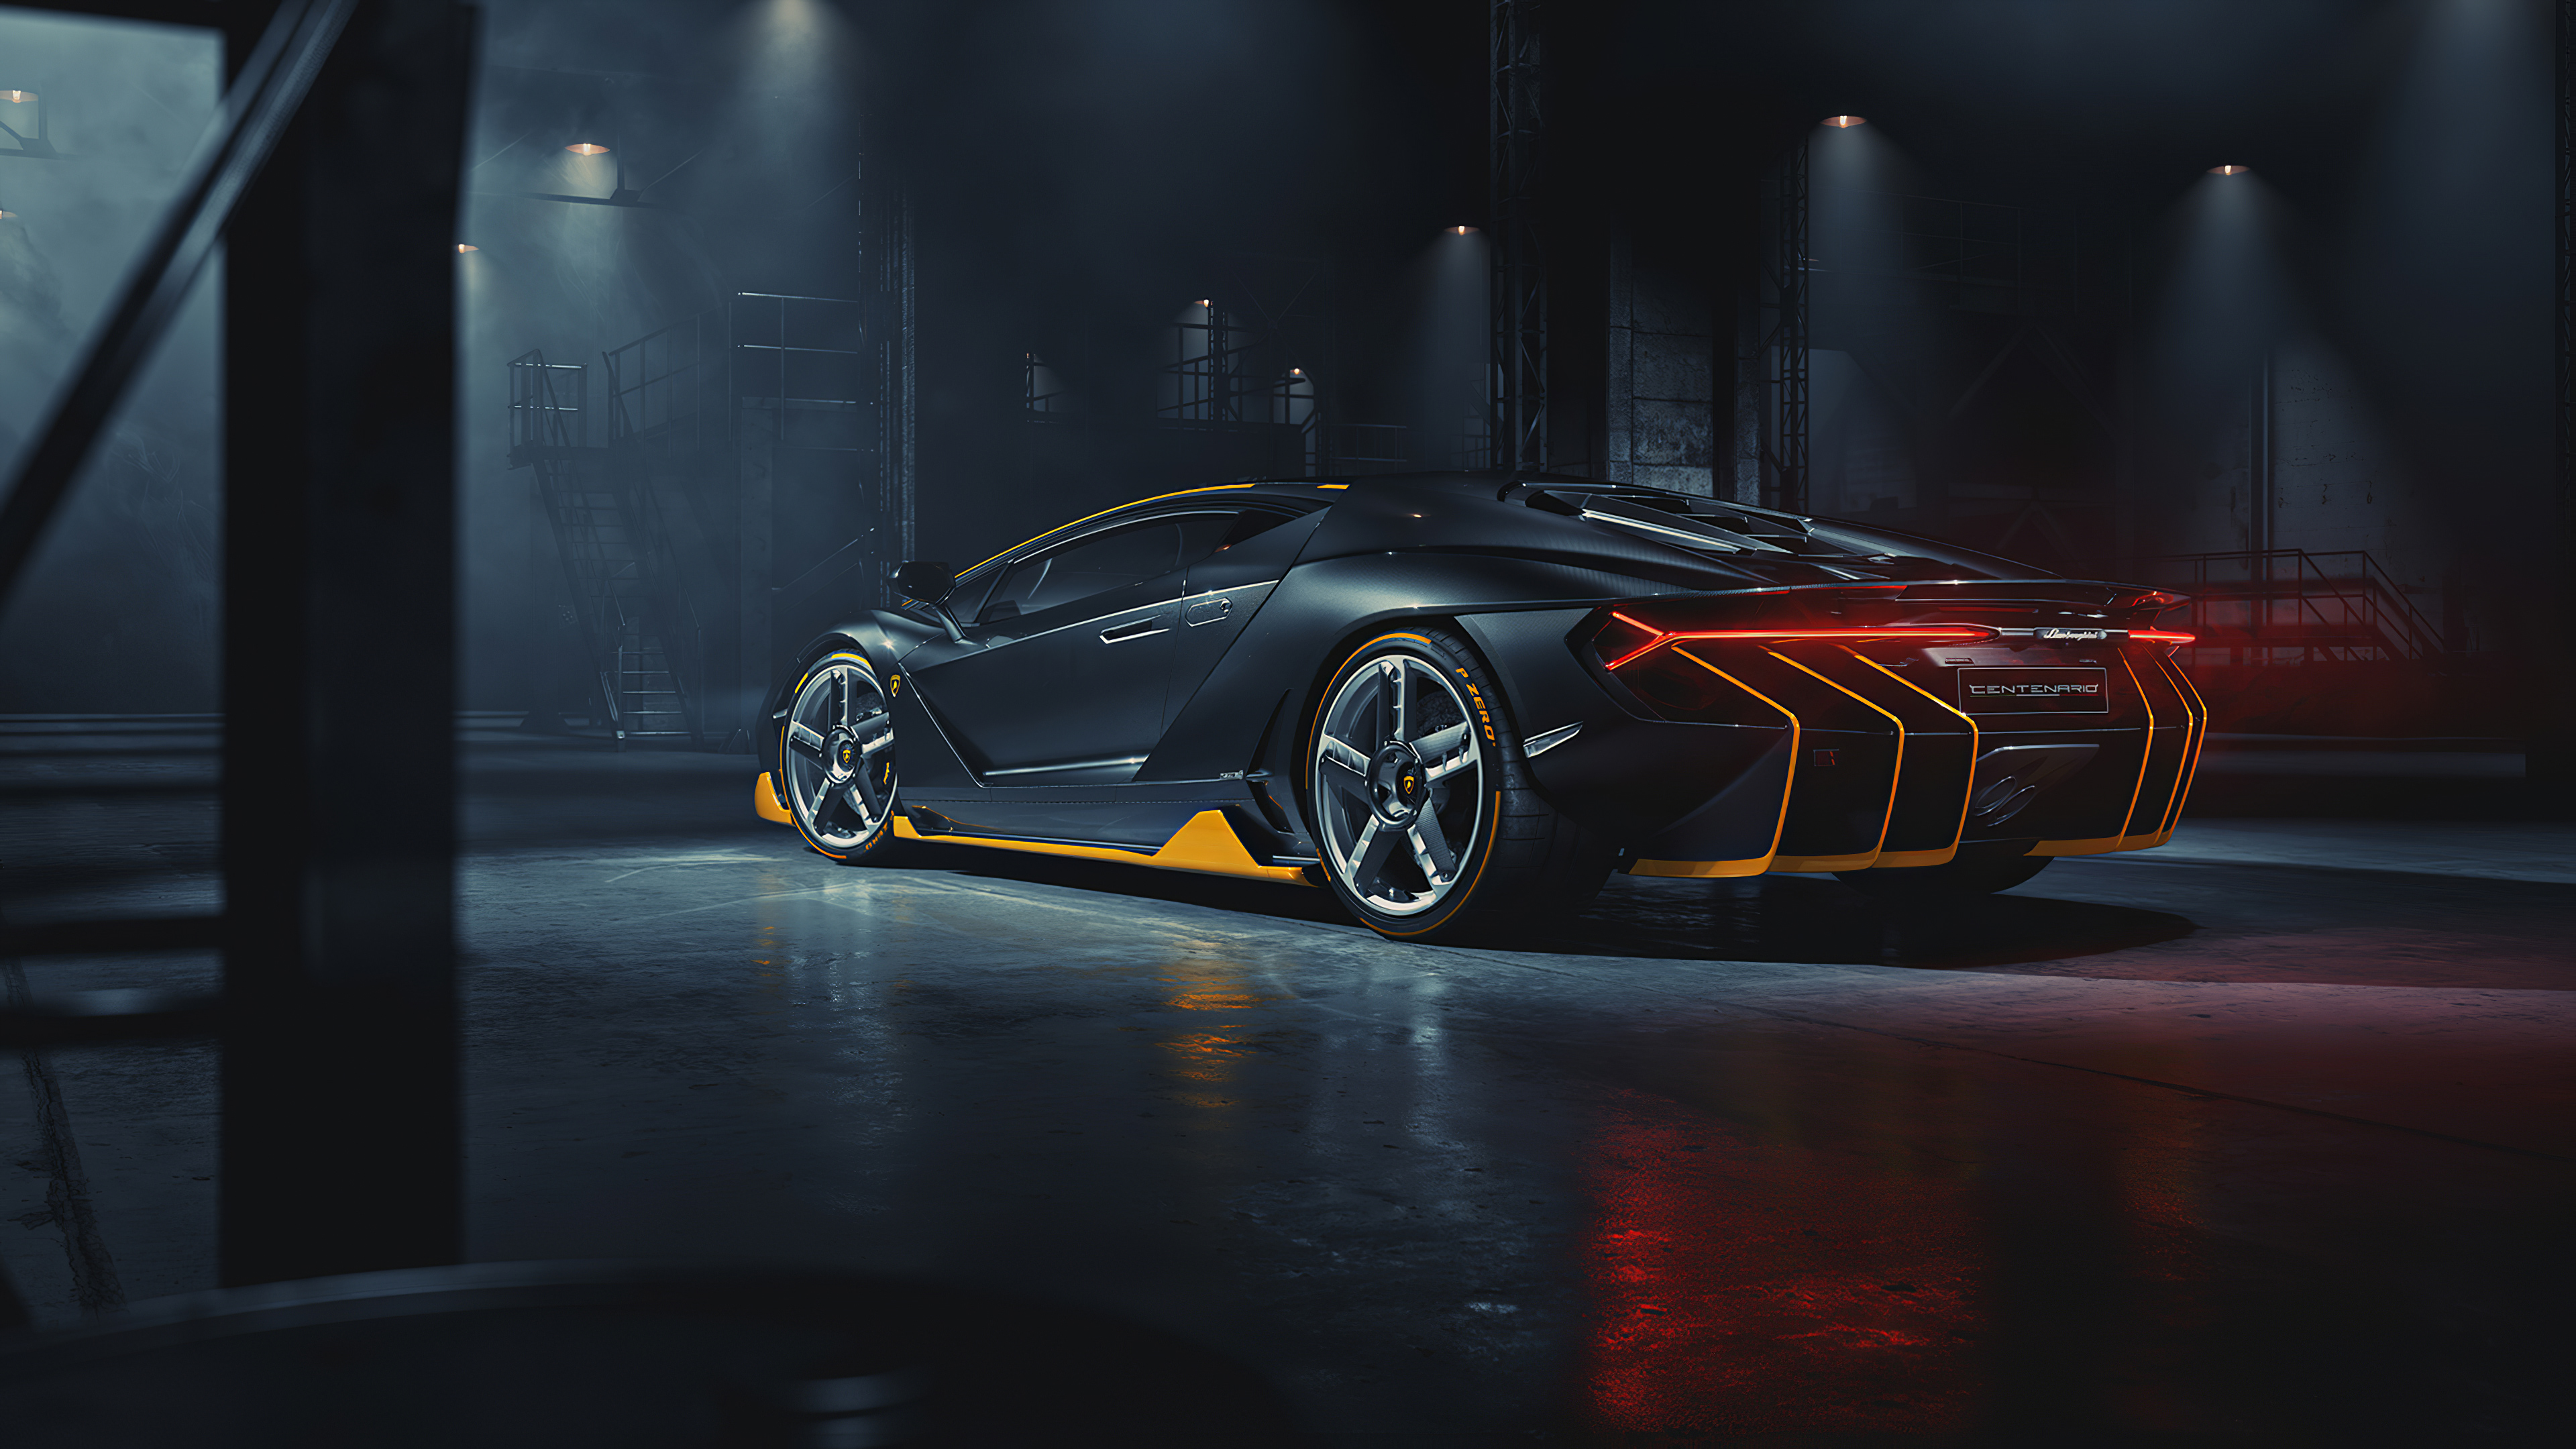 Lamborghini Centenario Rear 2020, HD Cars, 4k Wallpapers ...